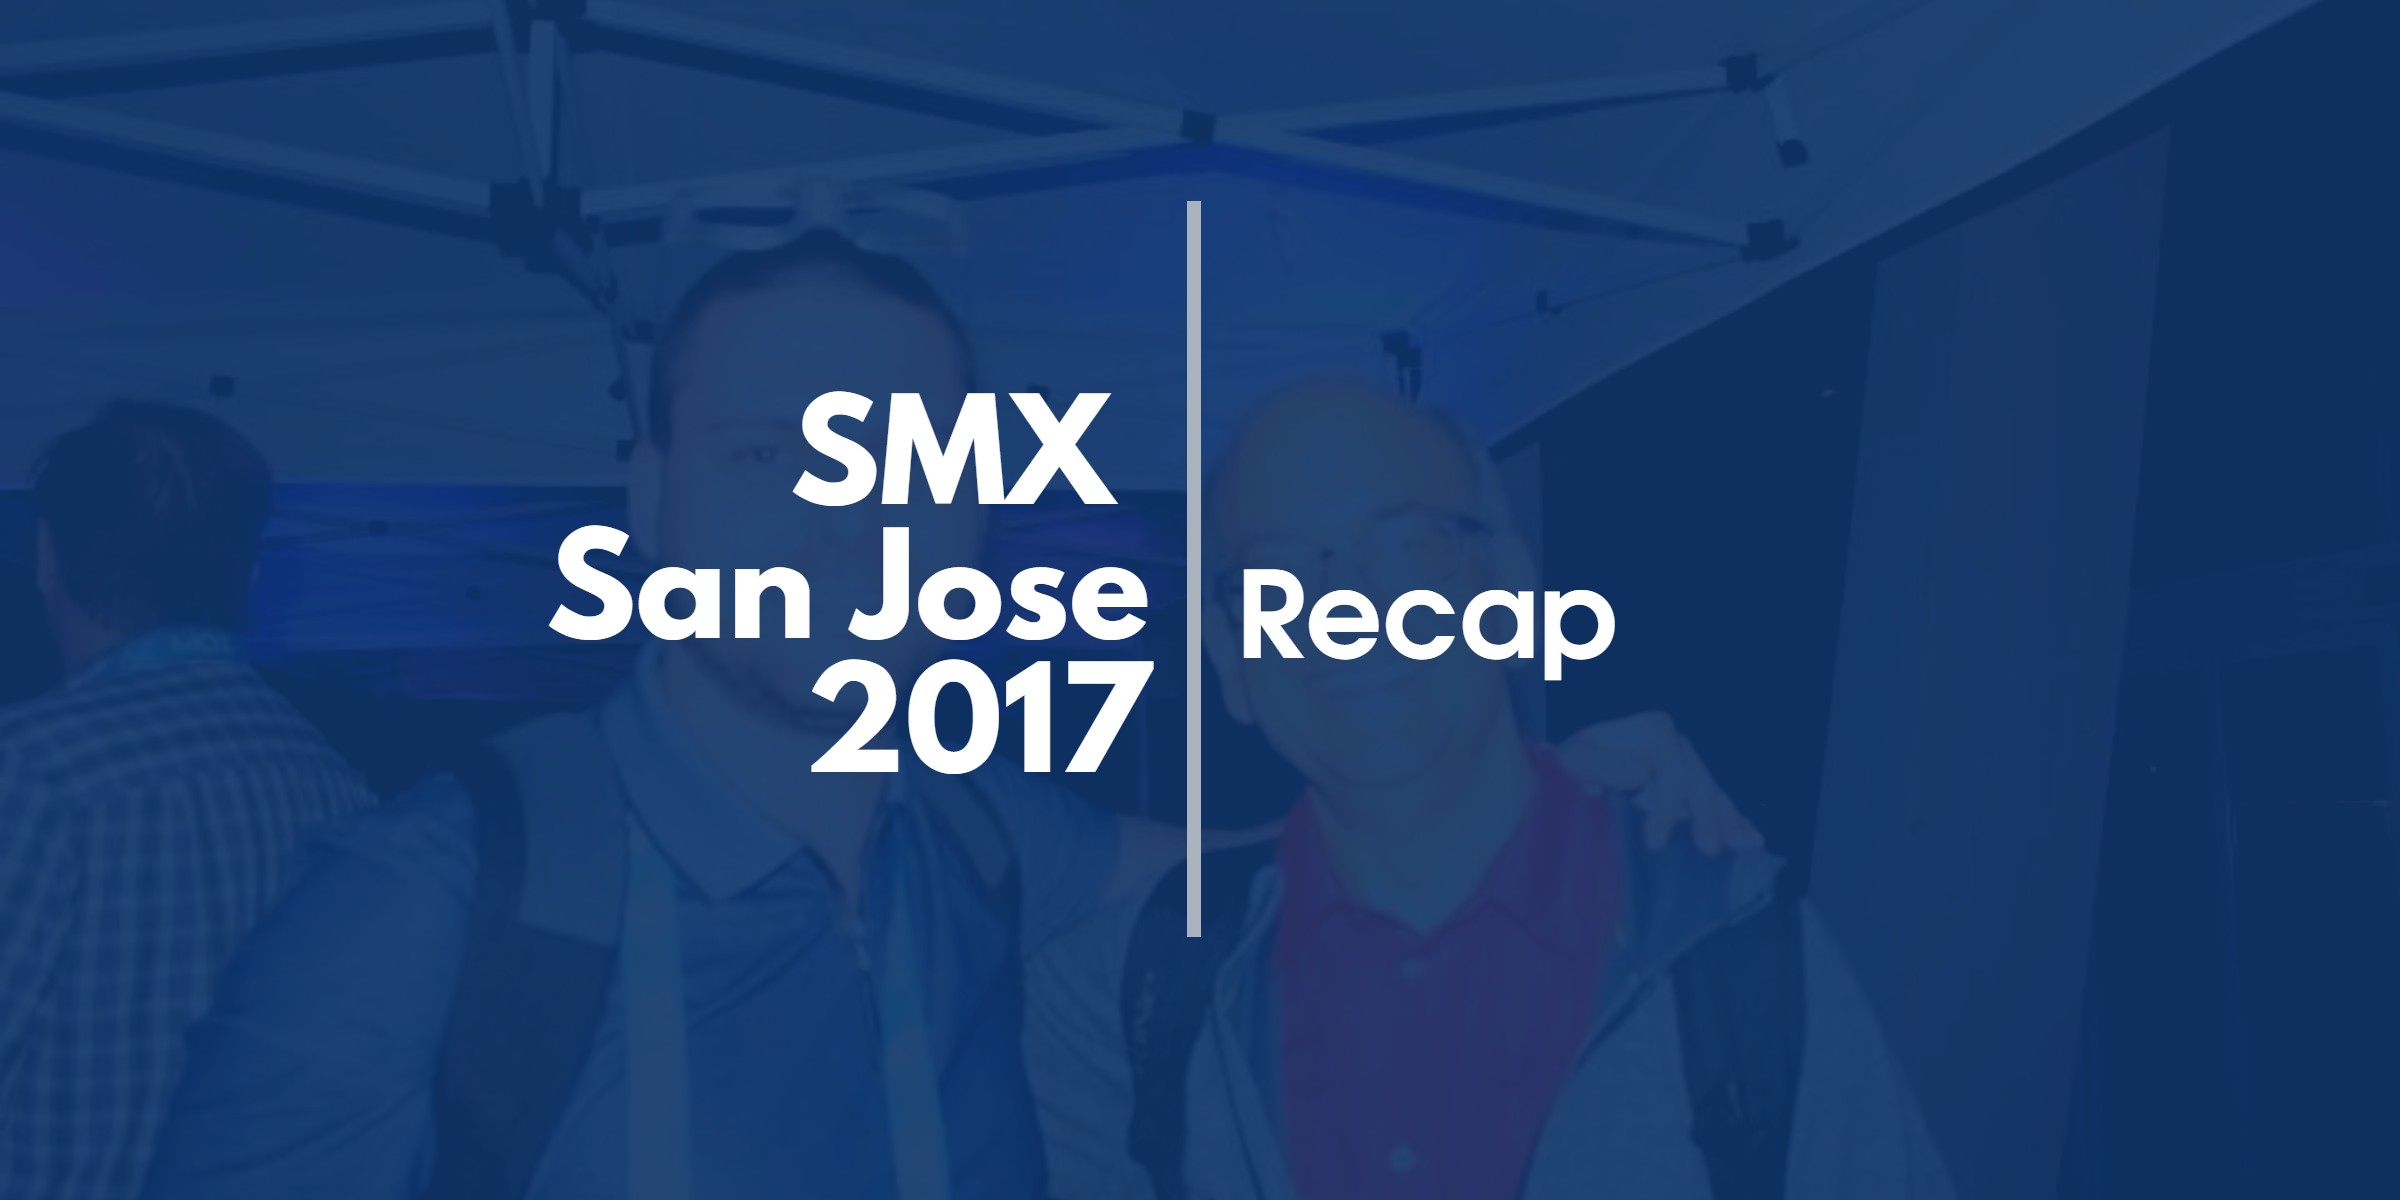 smx-san-jose-2017-recap